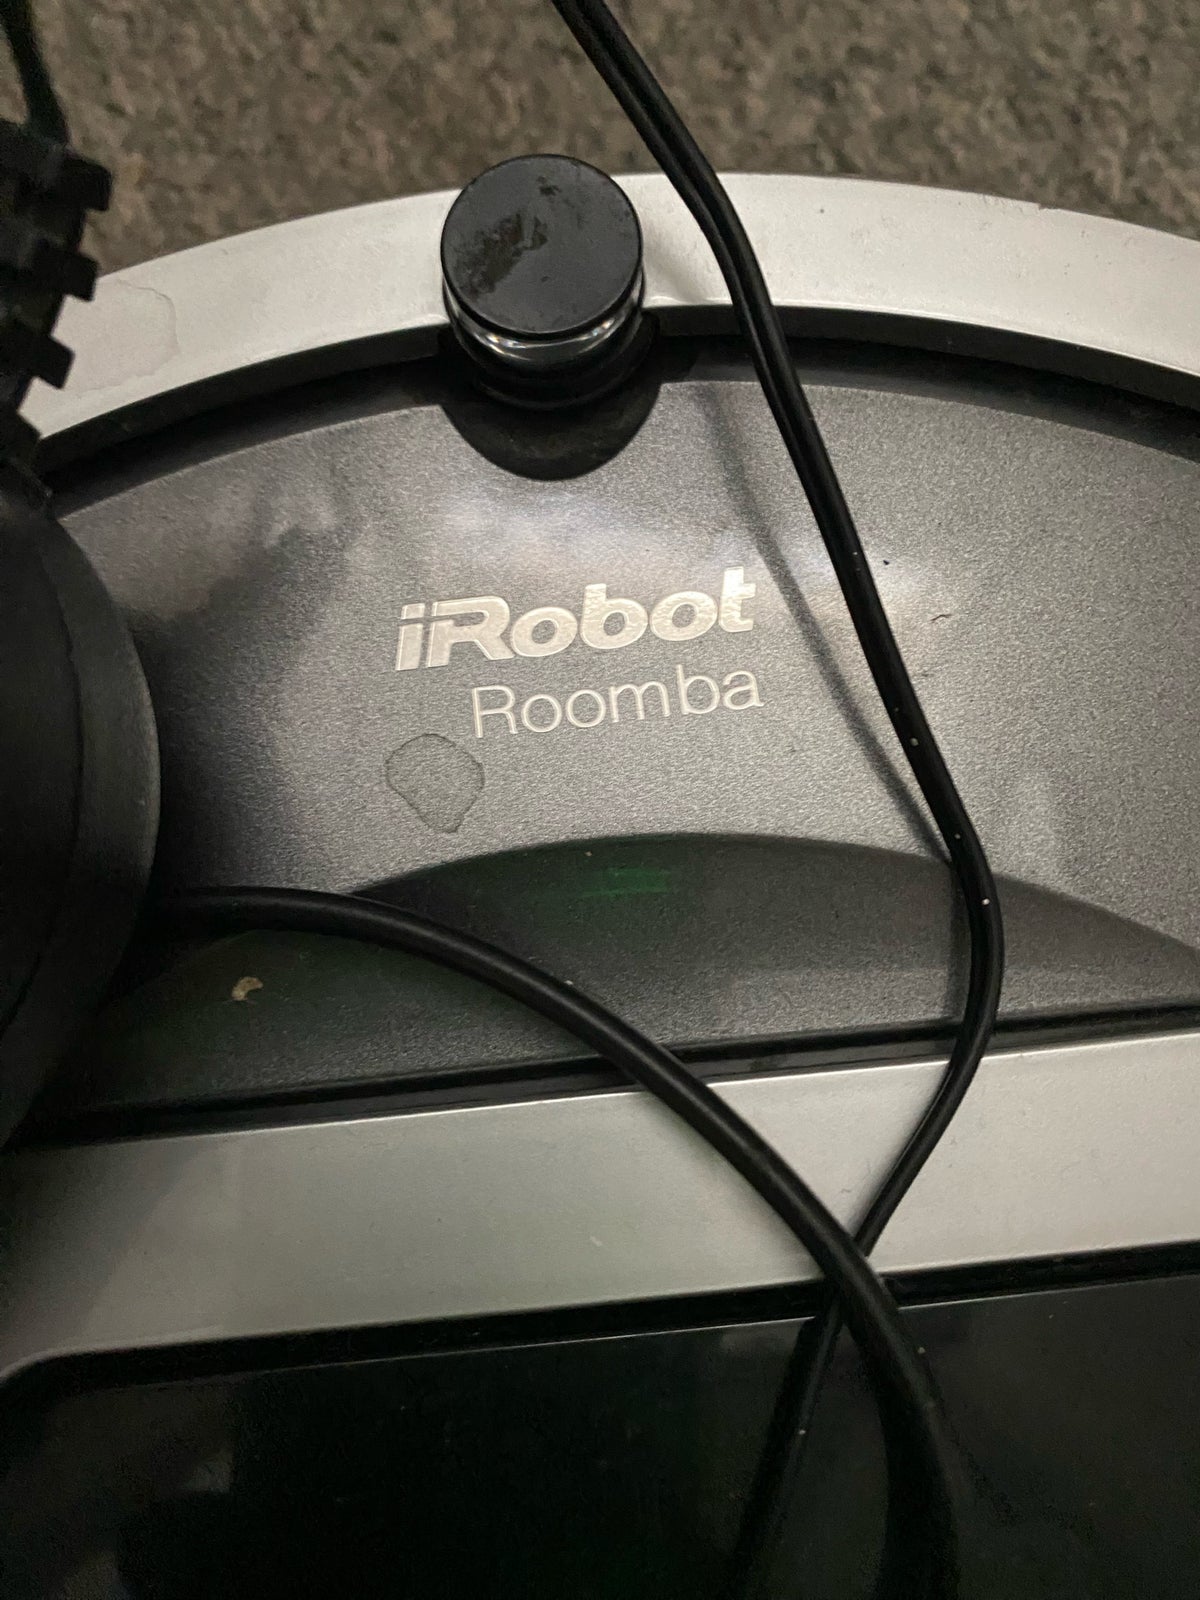 Robotstøvsuger, iRobot